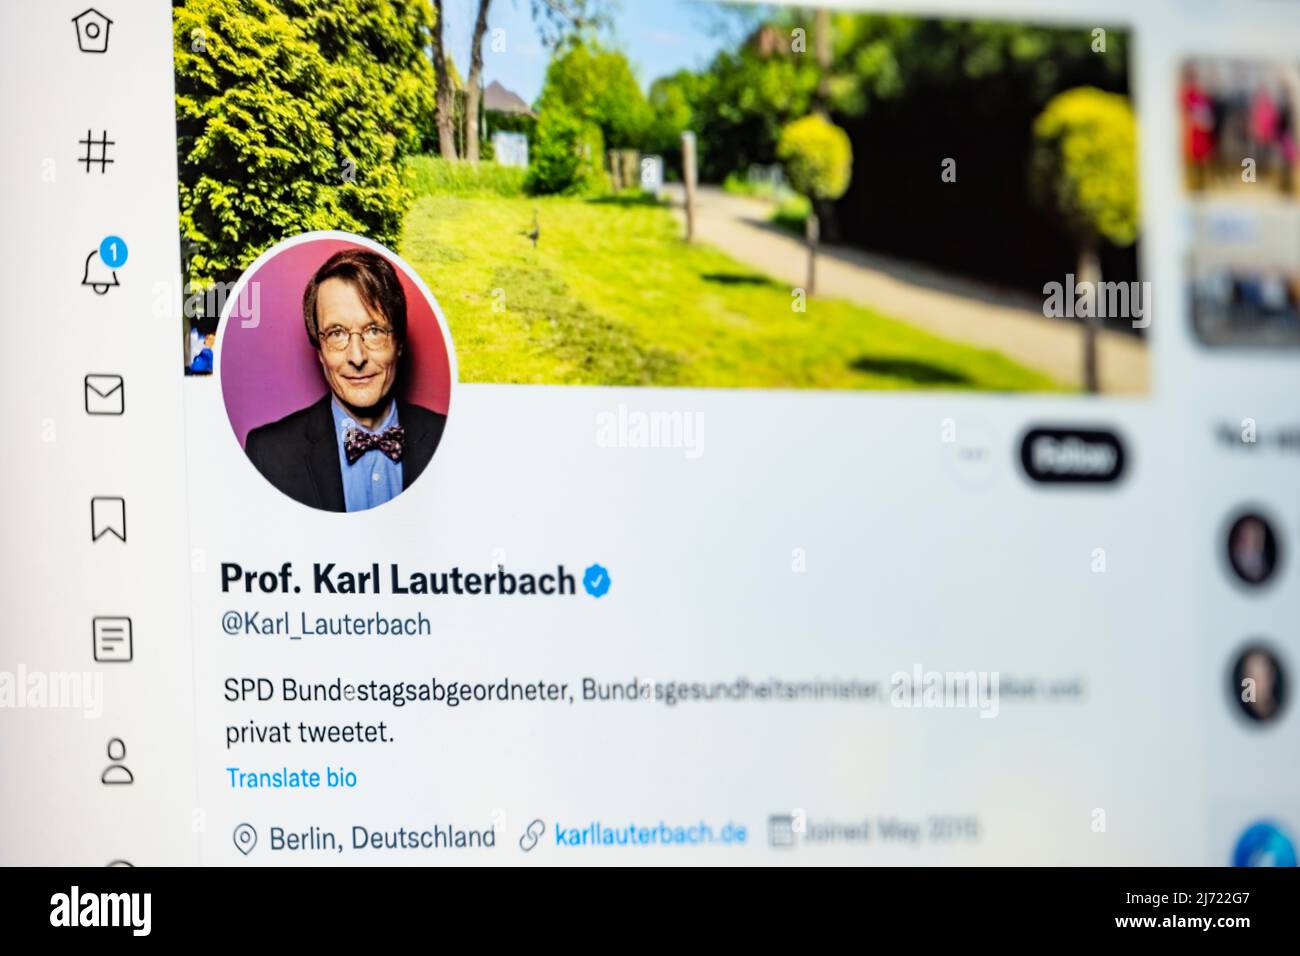 Twitter Seite des deutschen Gesundheitsminseters Prof. Karl Lauterbach, Twitter, Soziales Netzwerk, Internet, Internetseite, Bildschirmfoto, dettaglio Foto Stock